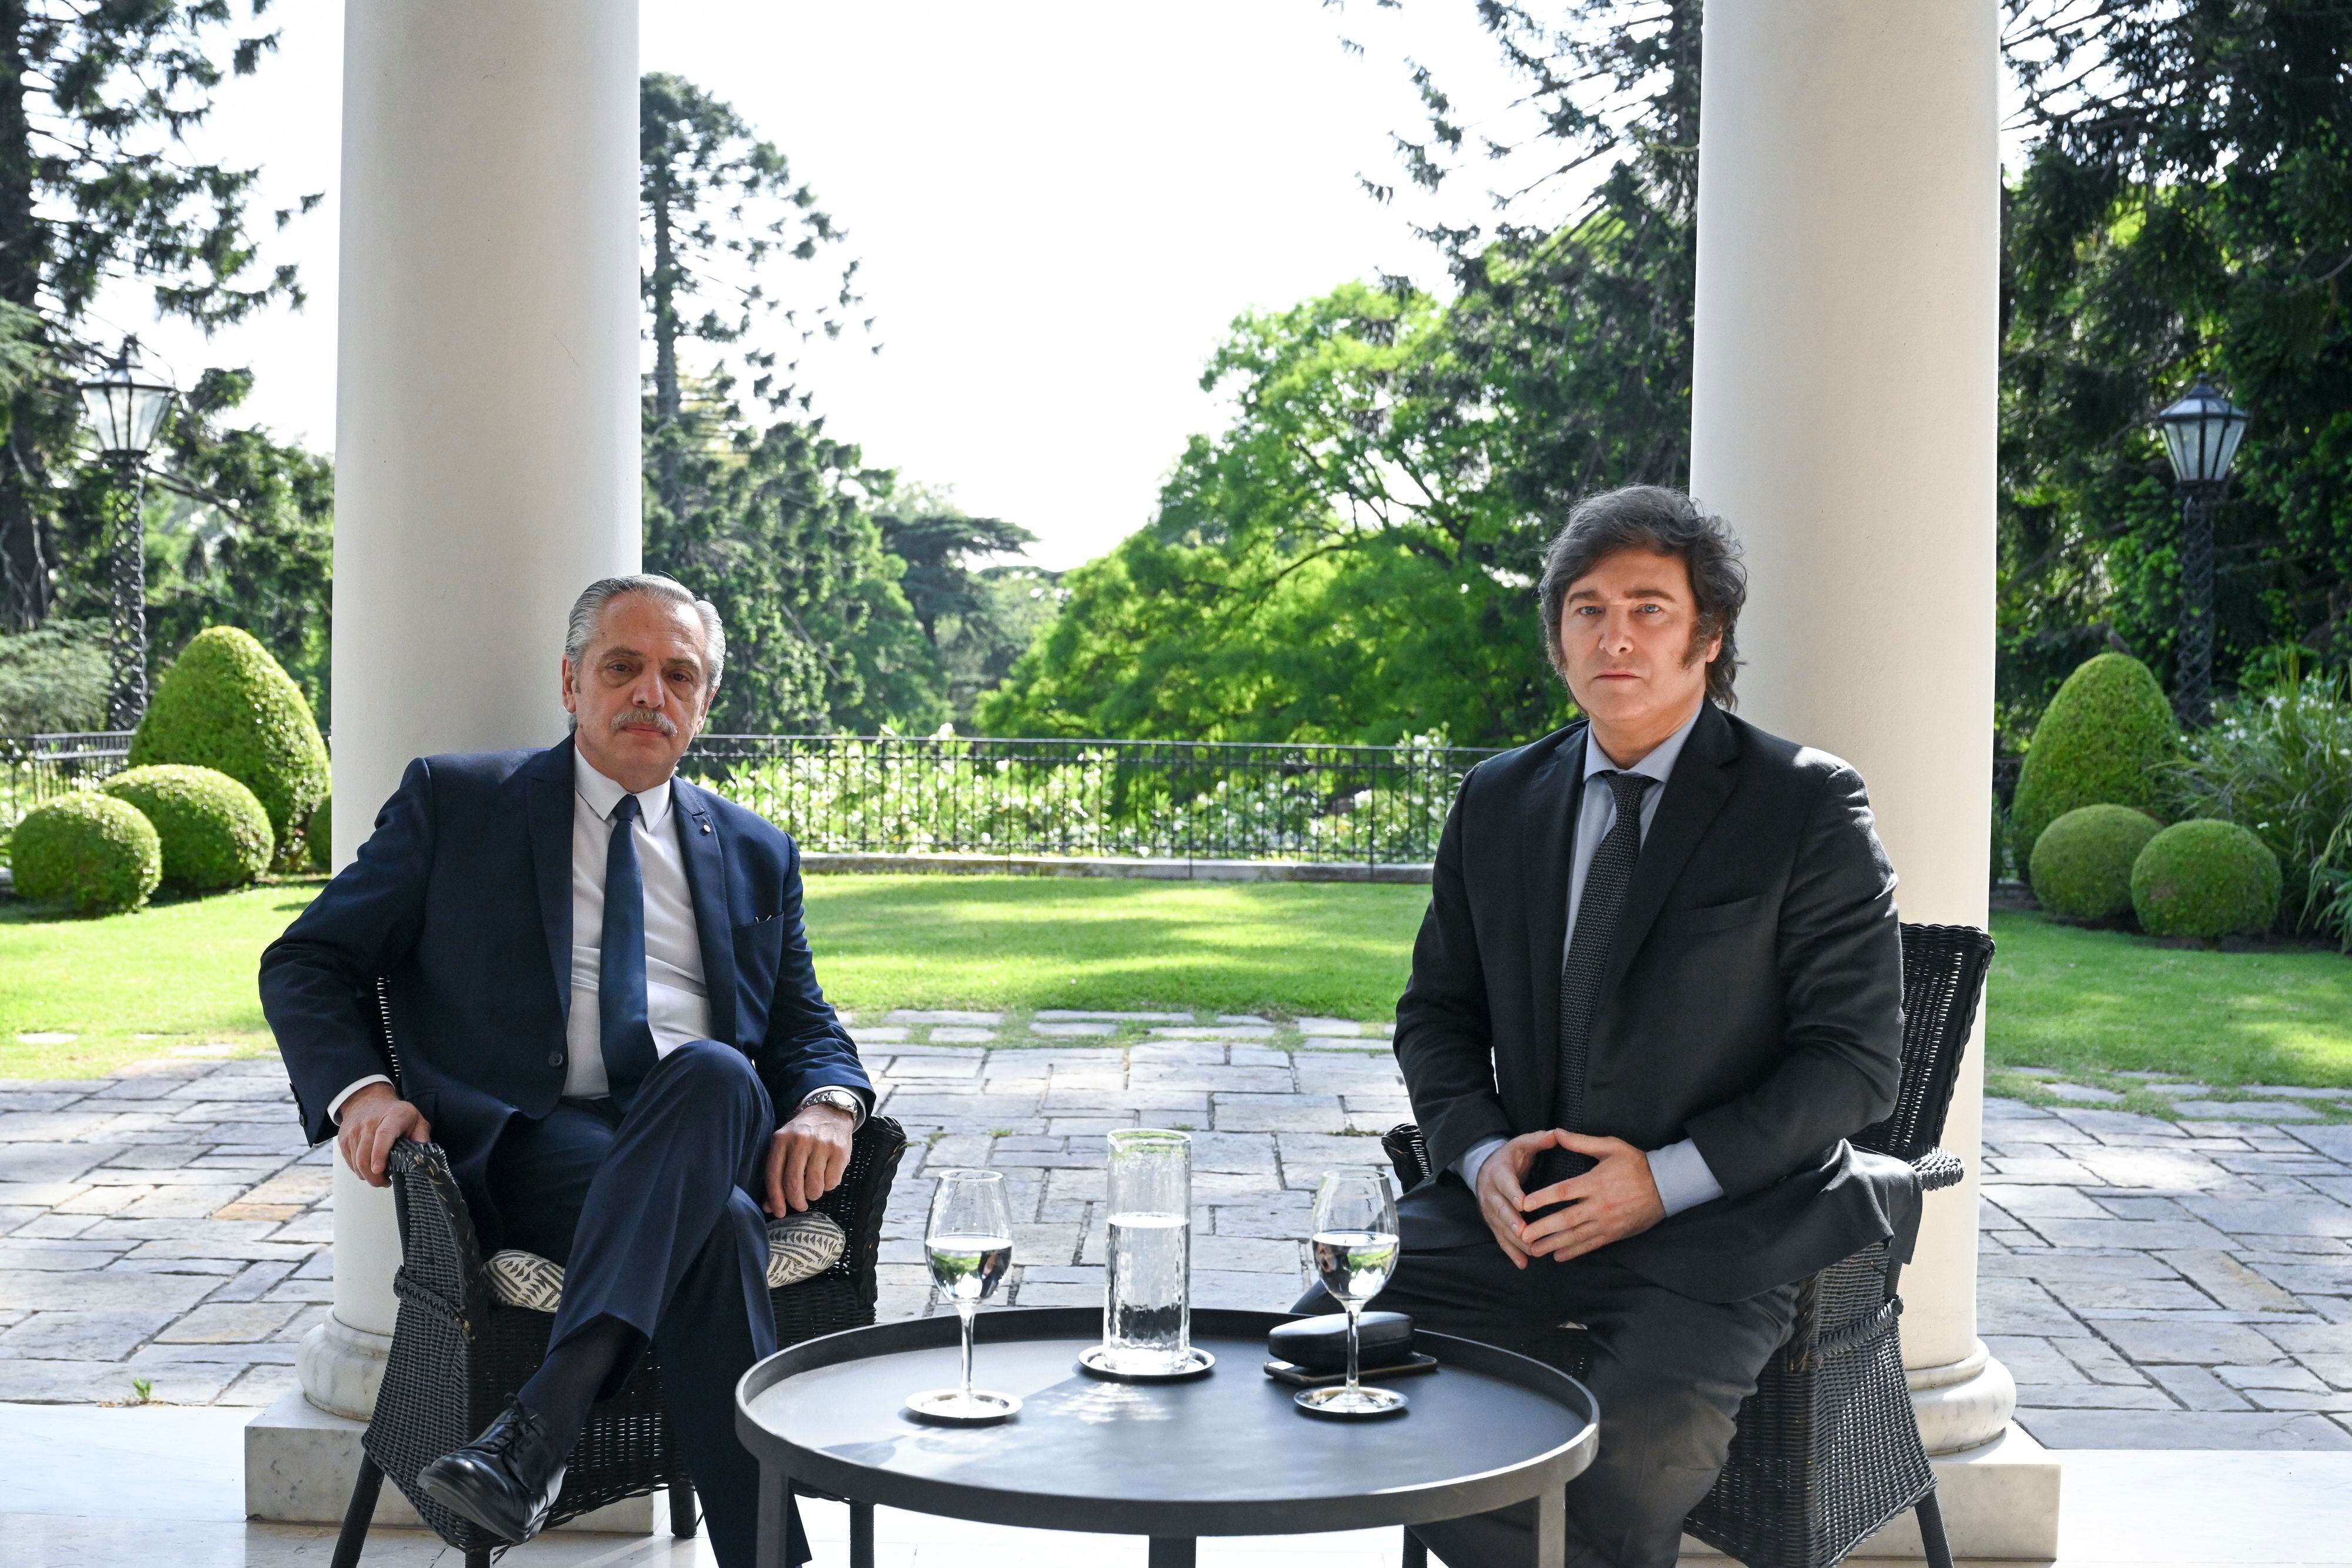 Alberto Fernández, presidente saliente, le entregará los atributos presidenciales a Javier Milei en la ceremonia del próximo domingo 